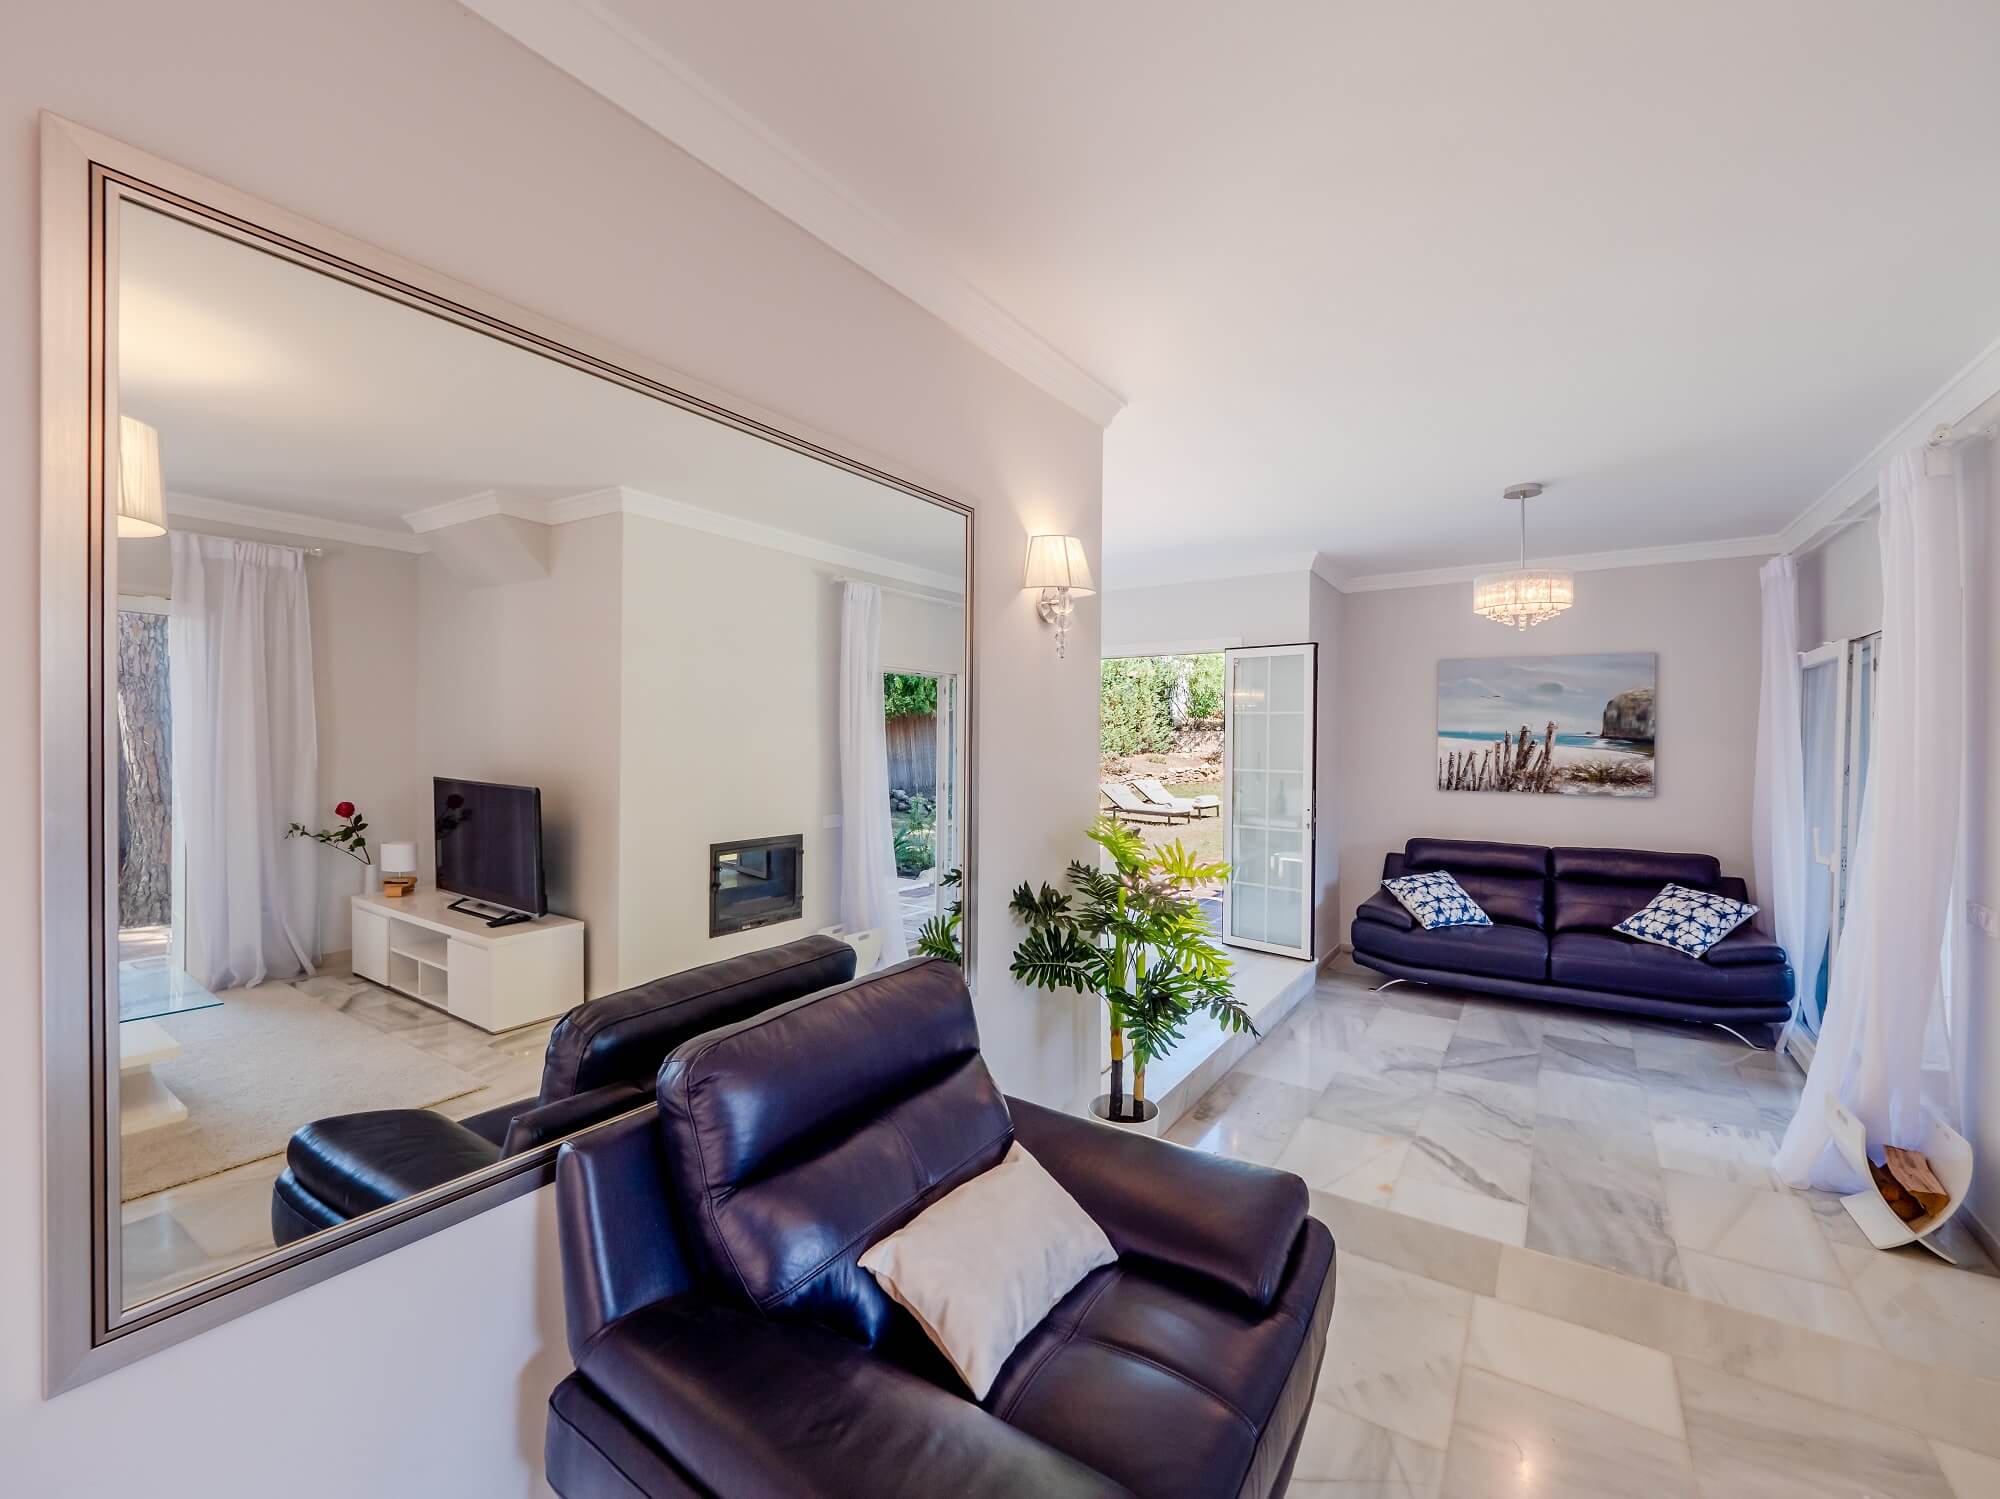 Дизайн интерьера дом в Марбелье, Коста дель Соль сделан нашей студией интерьерного дизайна "Tania Marbella Interior Design". Стиль интерьера: современный.